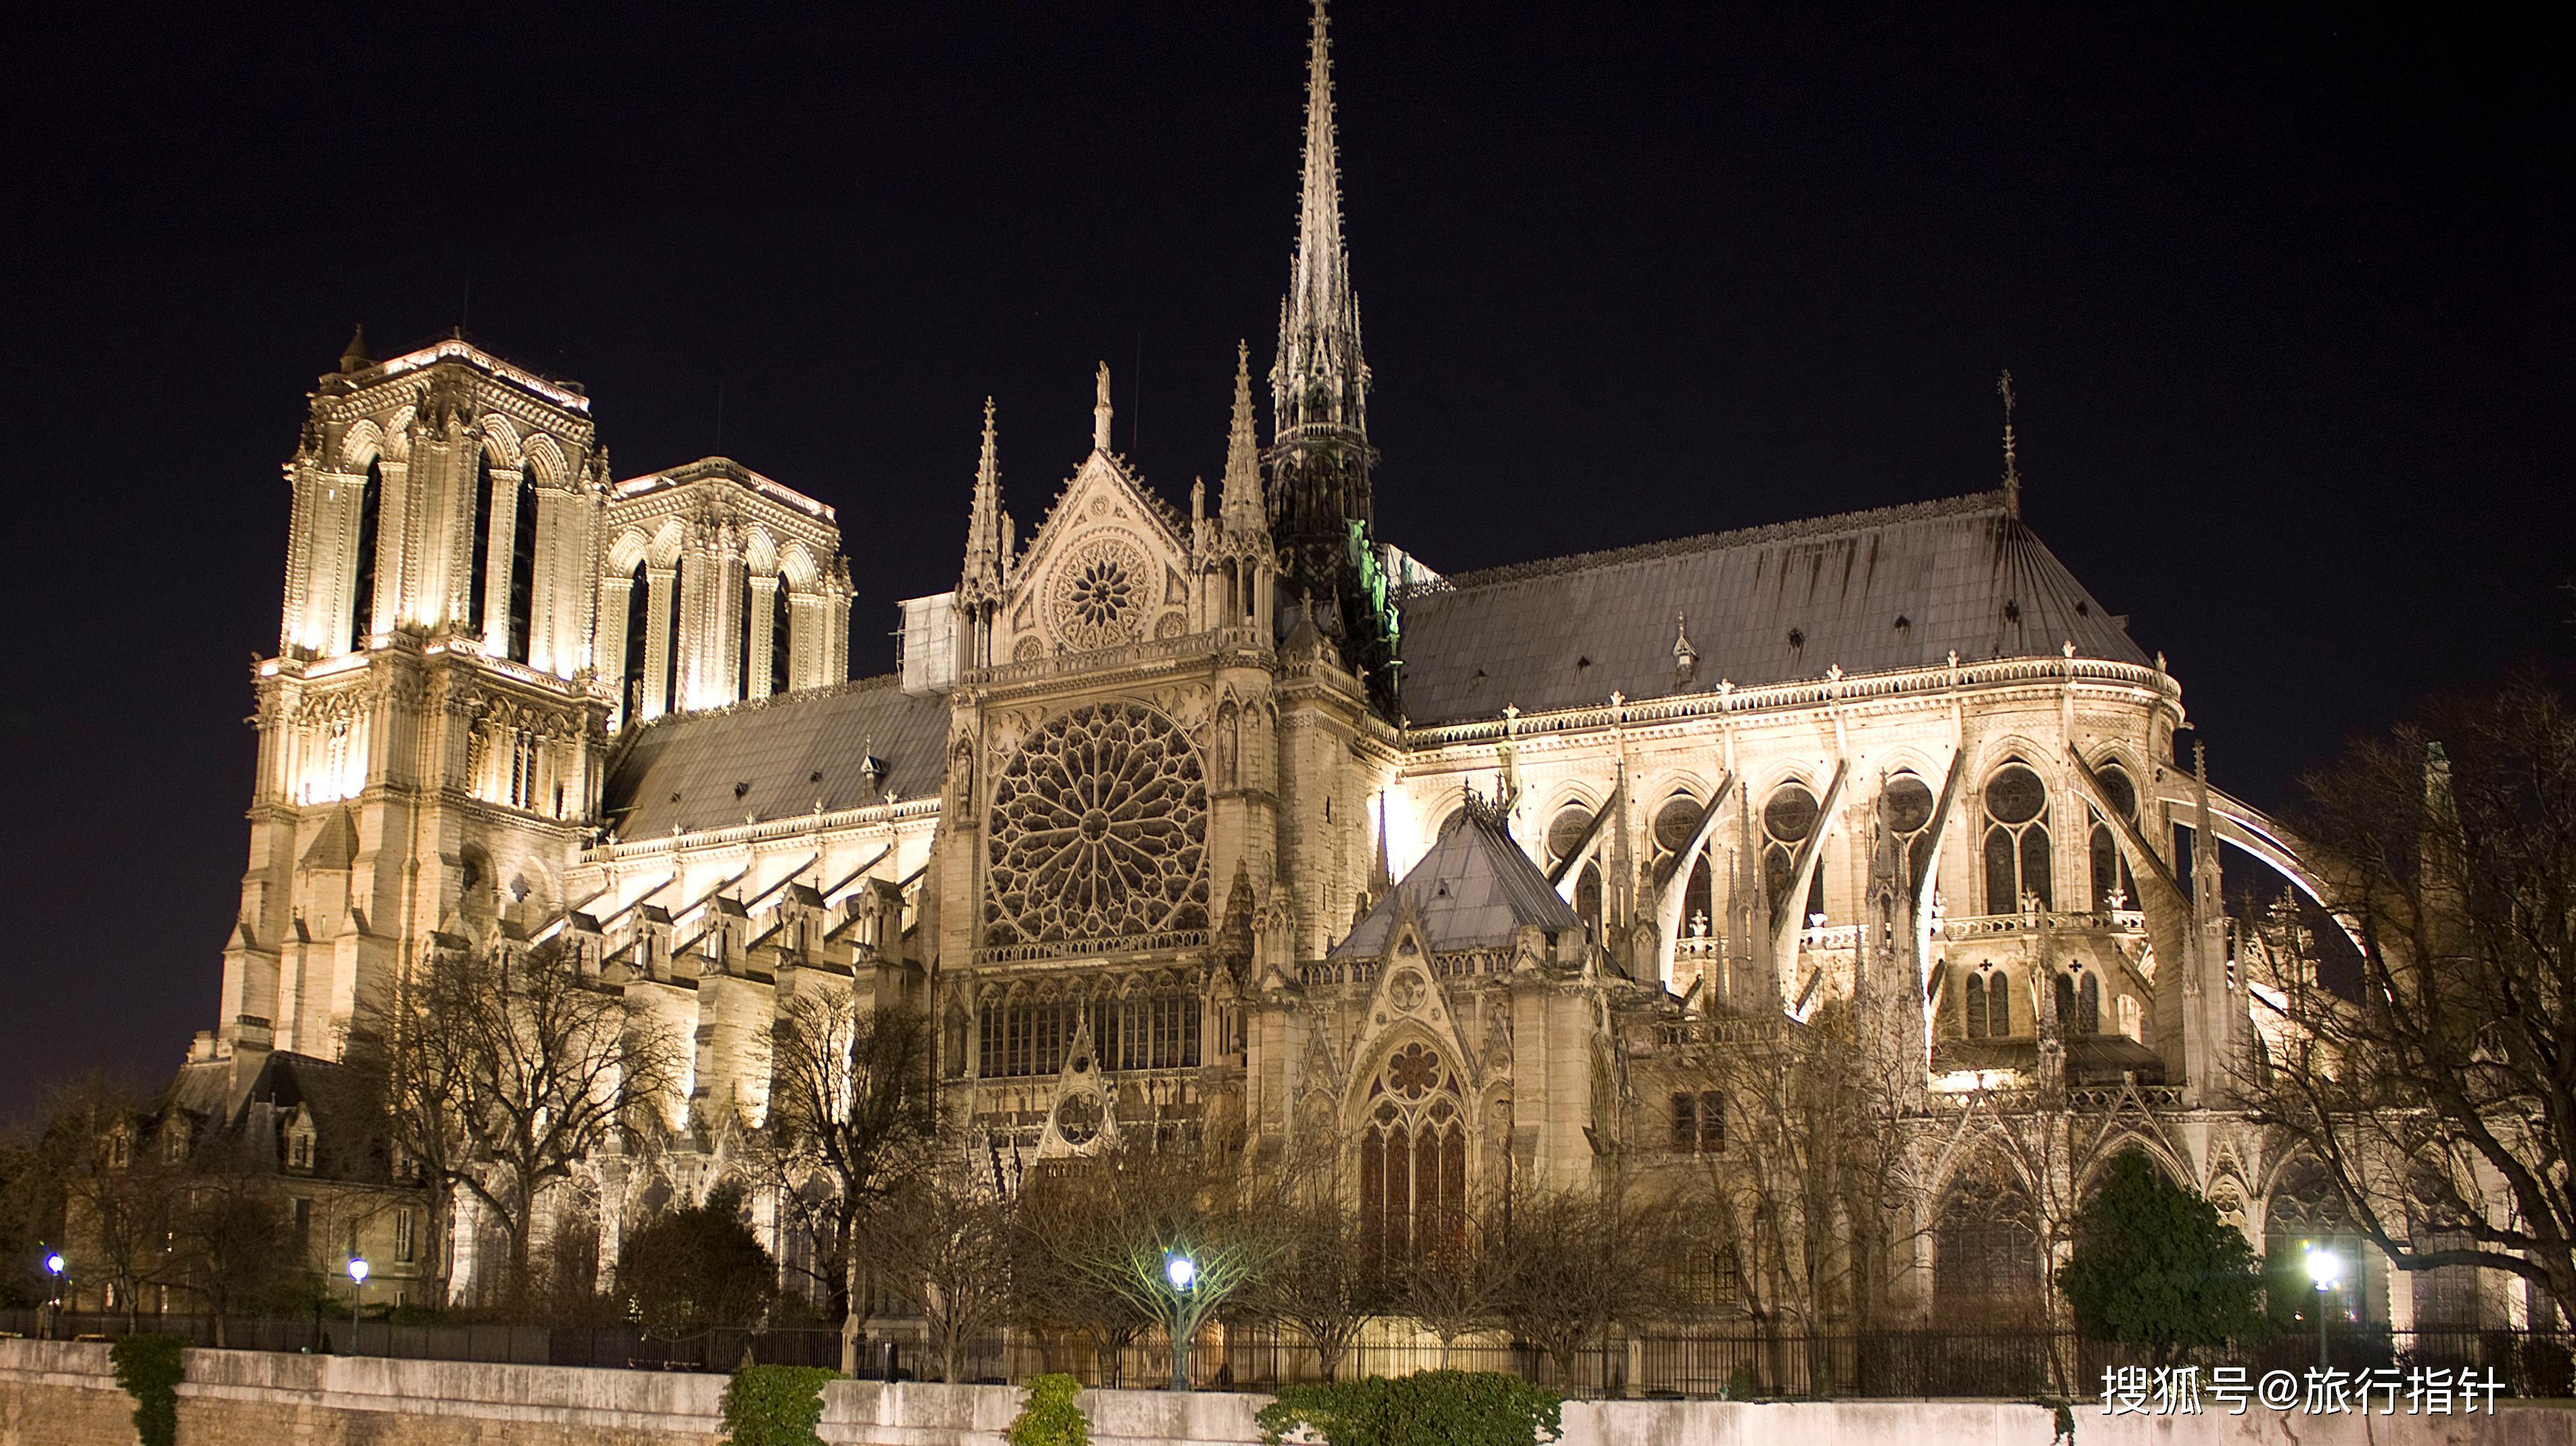 【巴黎圣母院】:铁塔高324米,设计新颖独特,是世界建筑史上的技术杰作